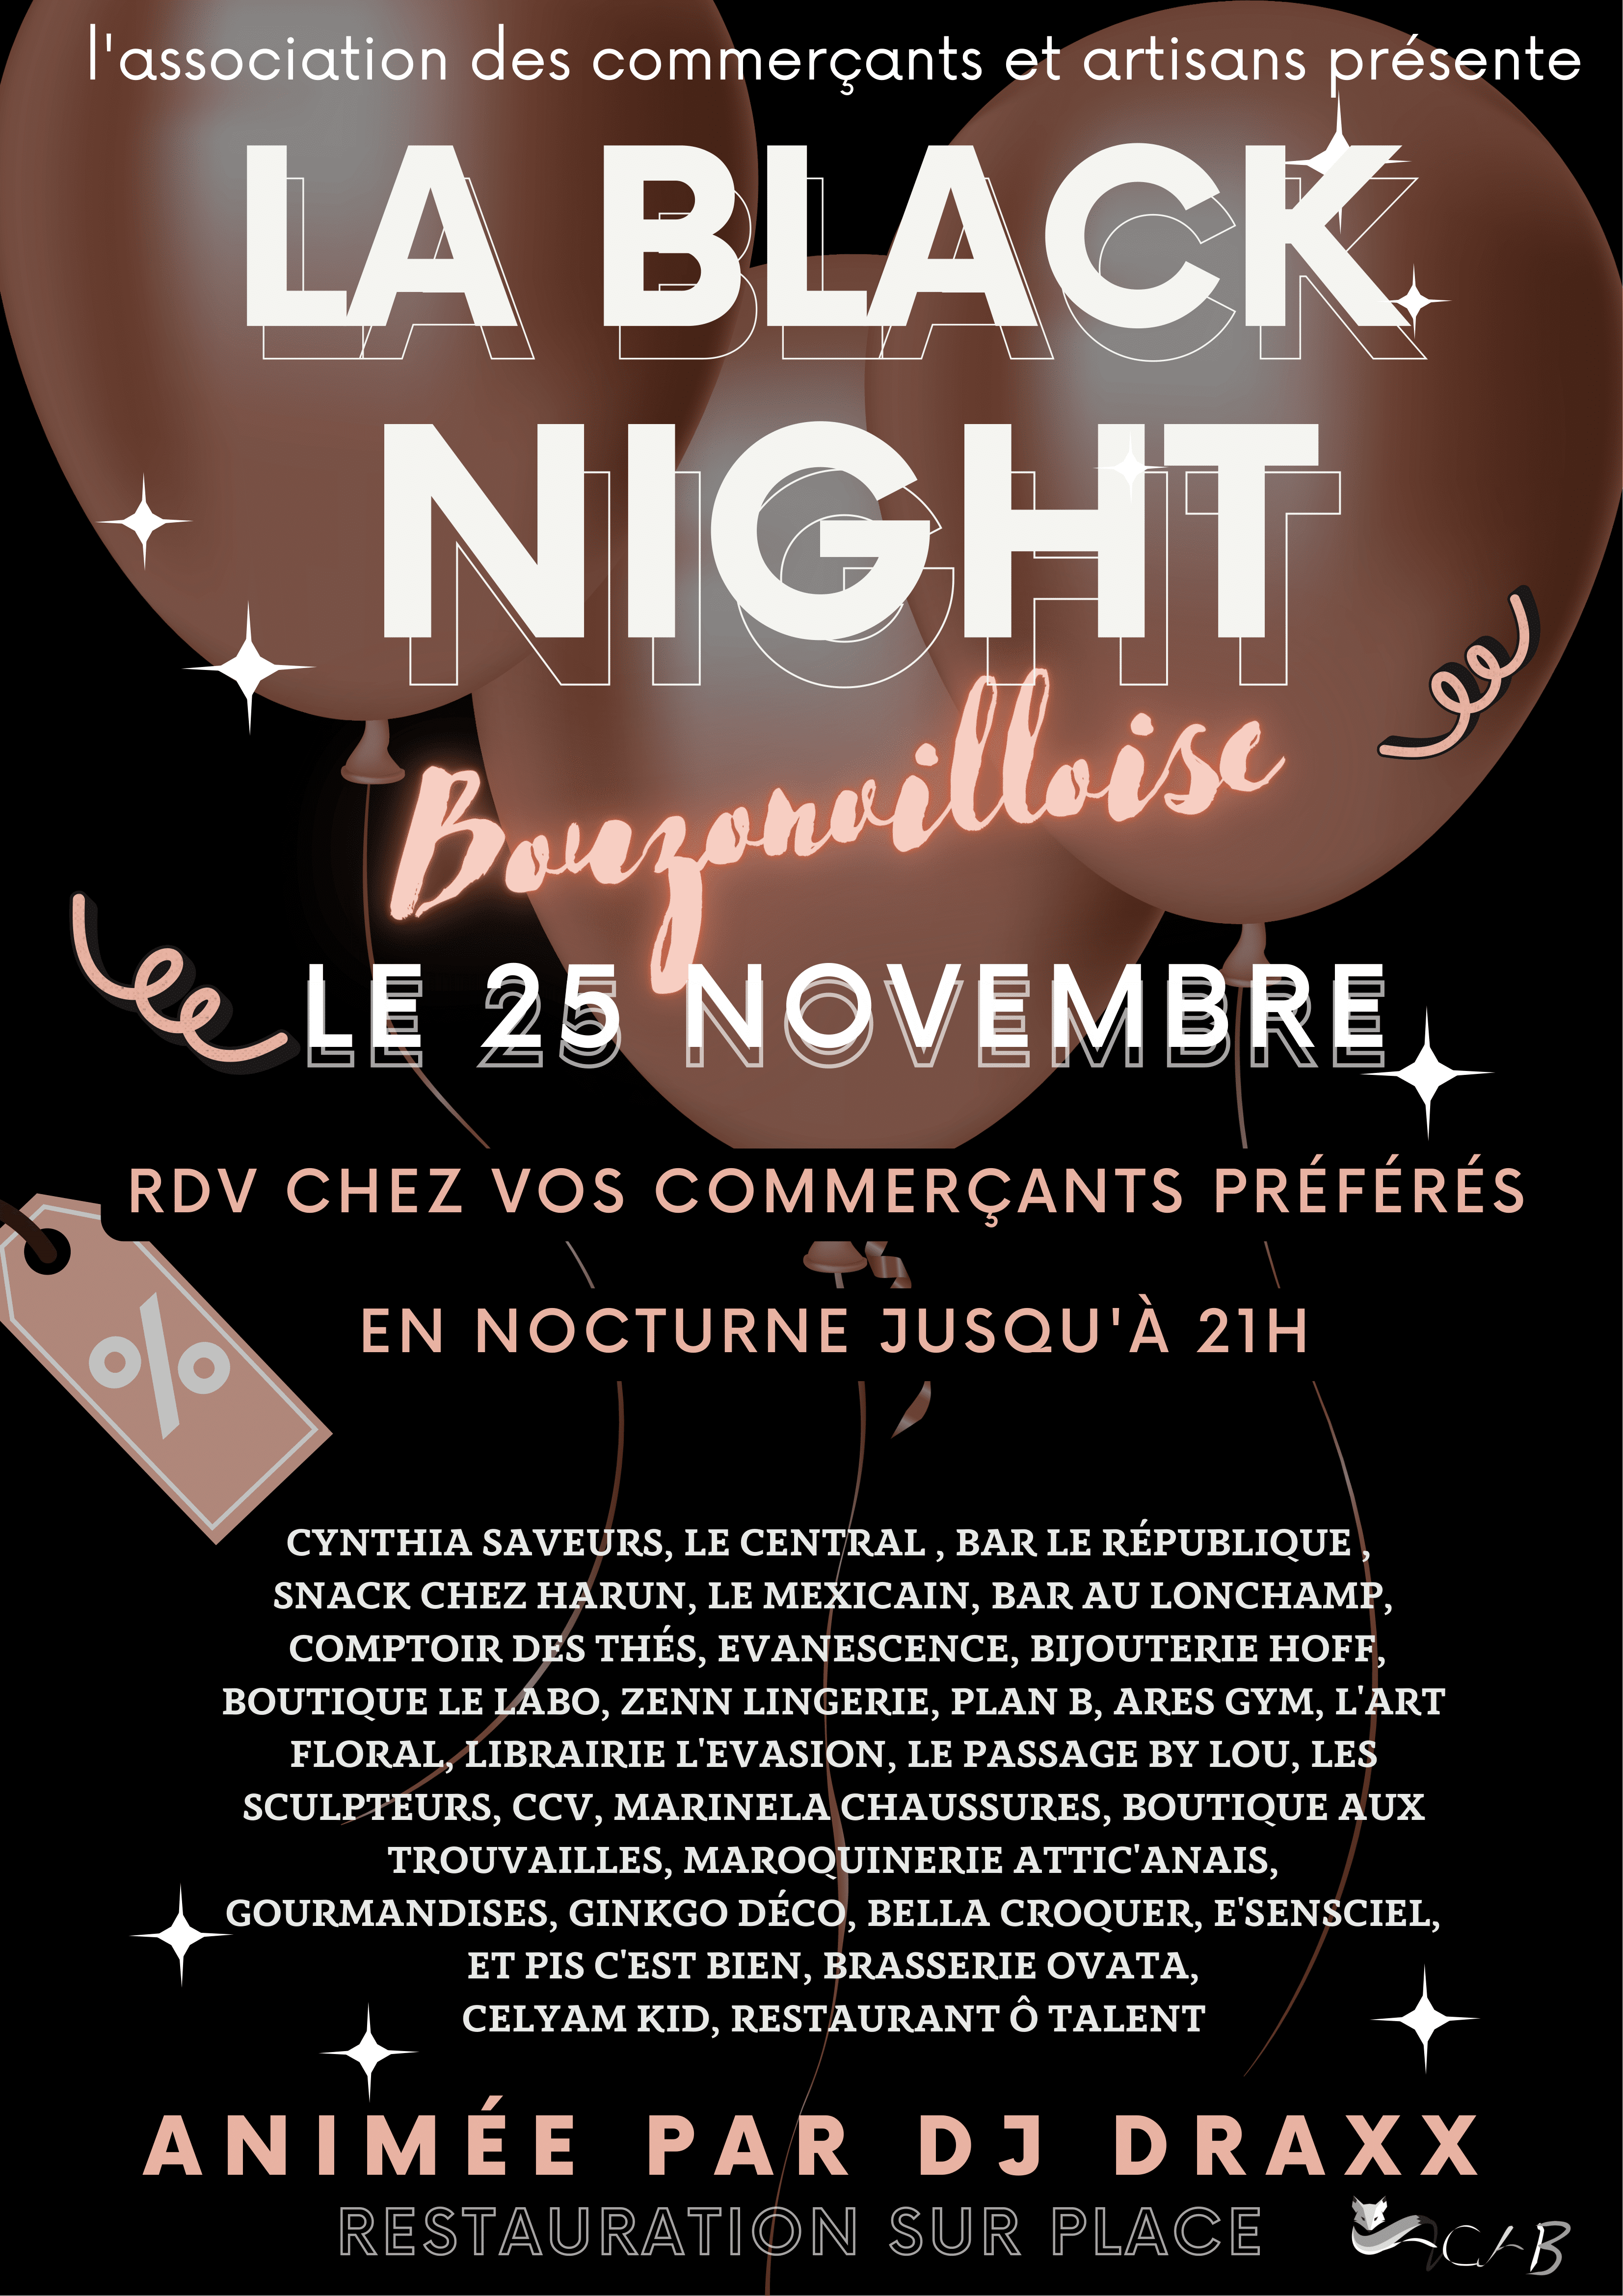 La Black Night Bouzonville